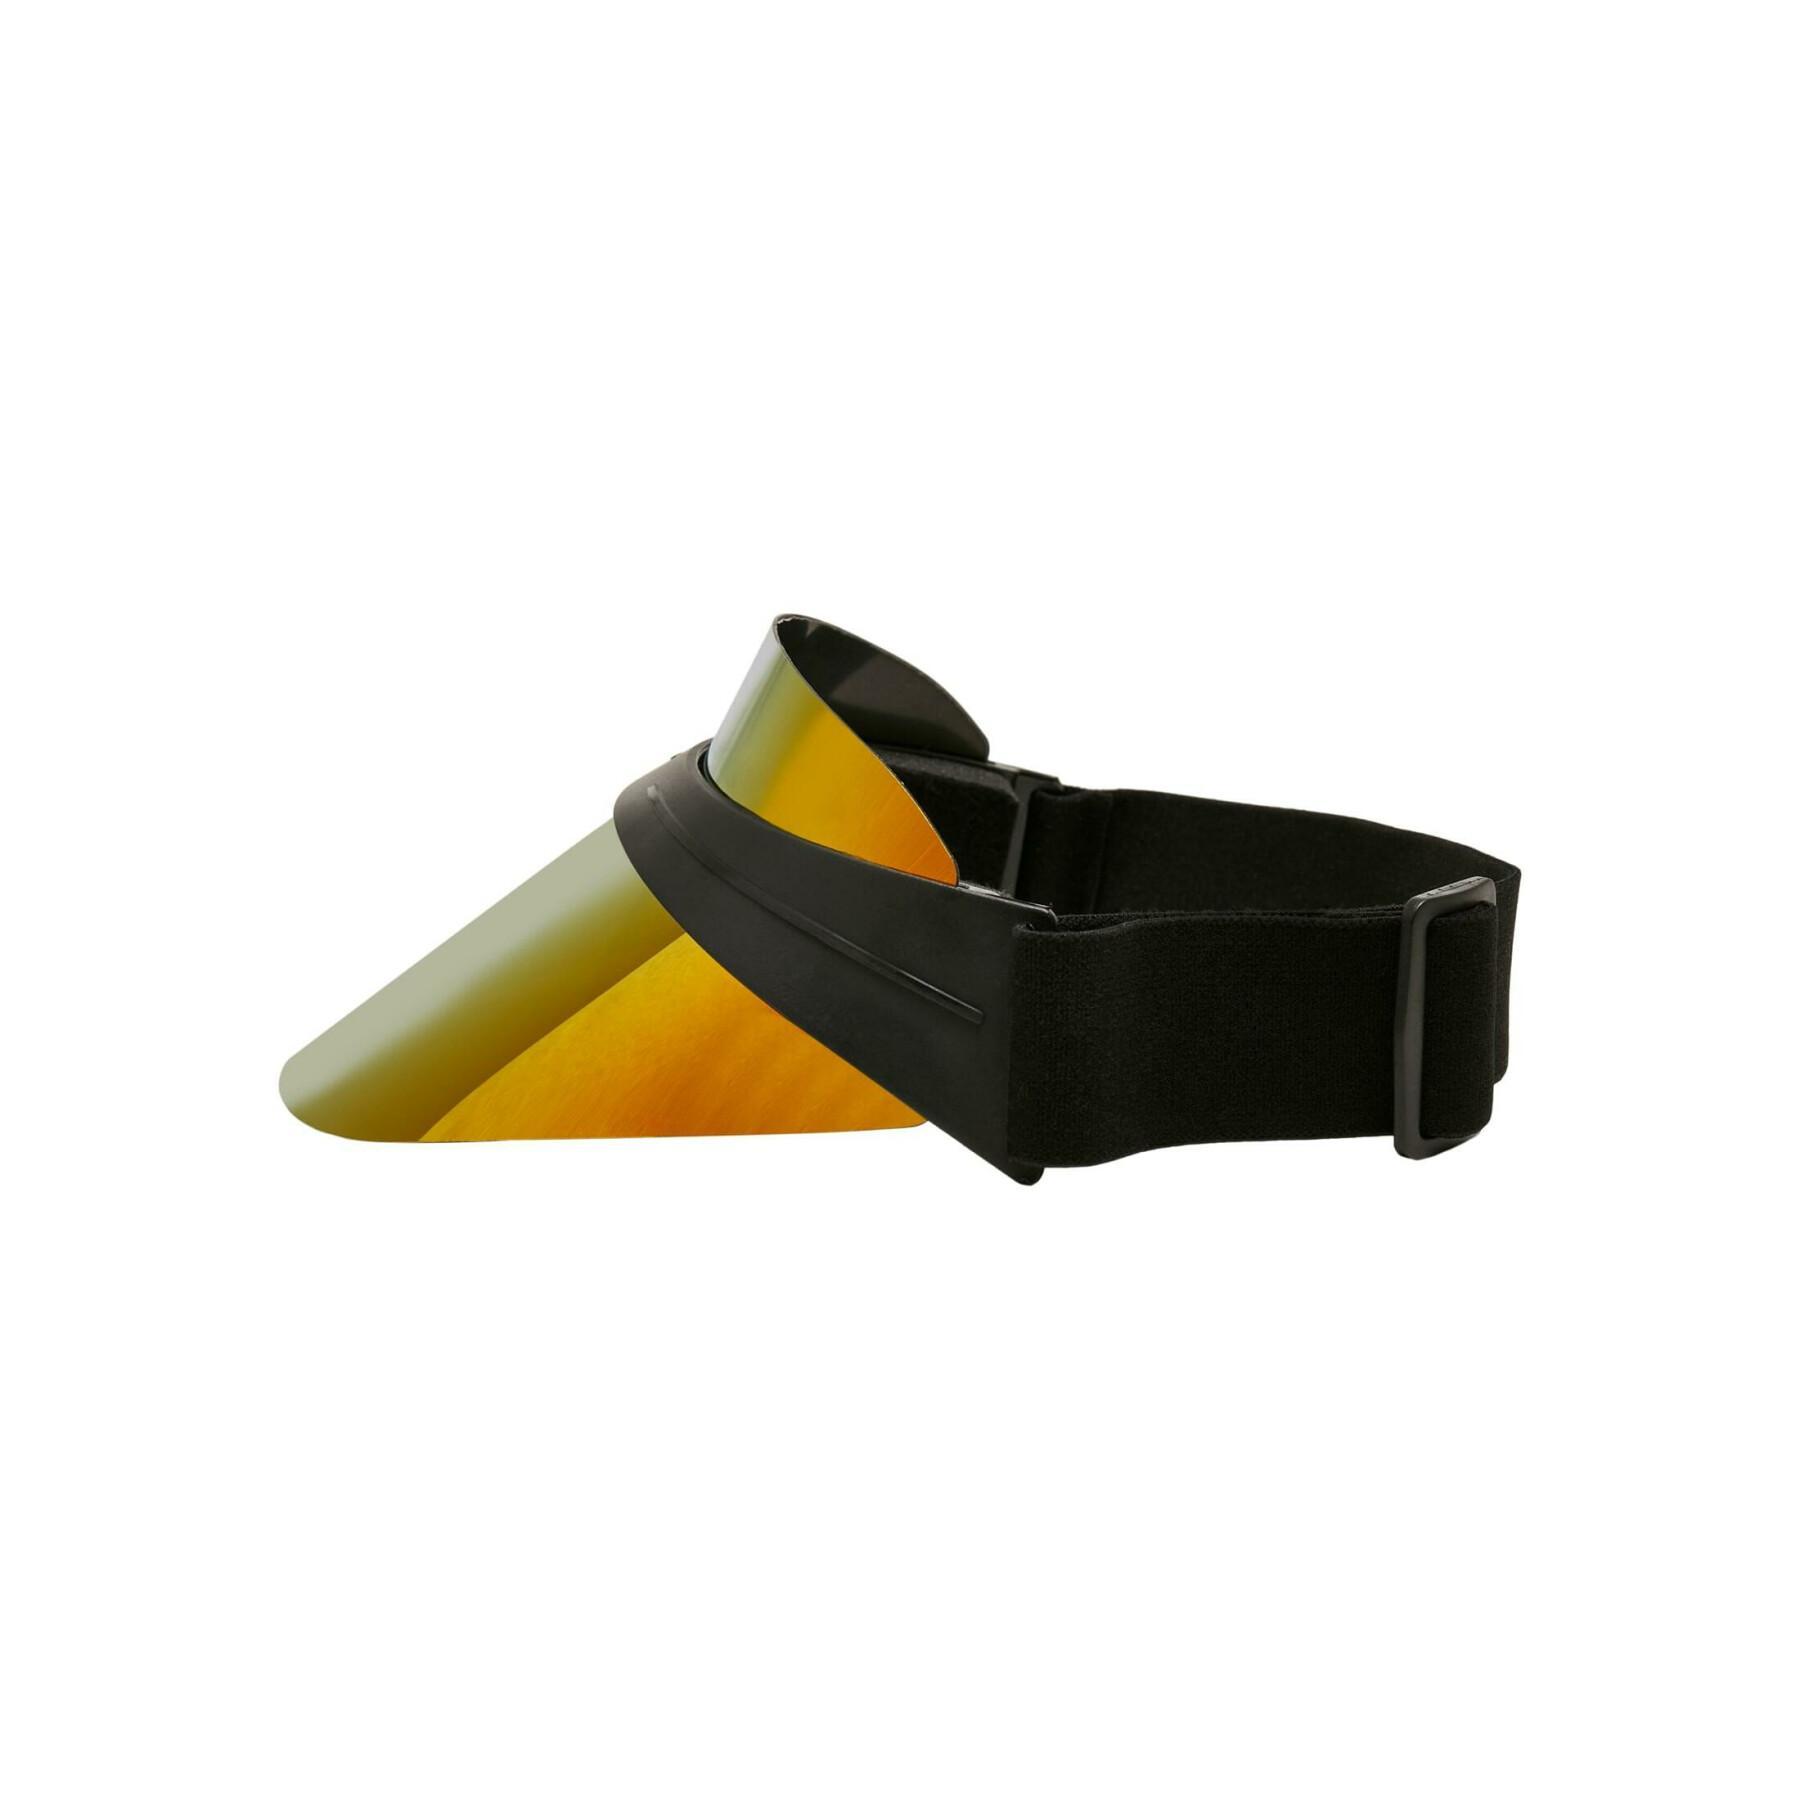 Plastic visor Urban Classics Cool Running - - Accessories - Equipment